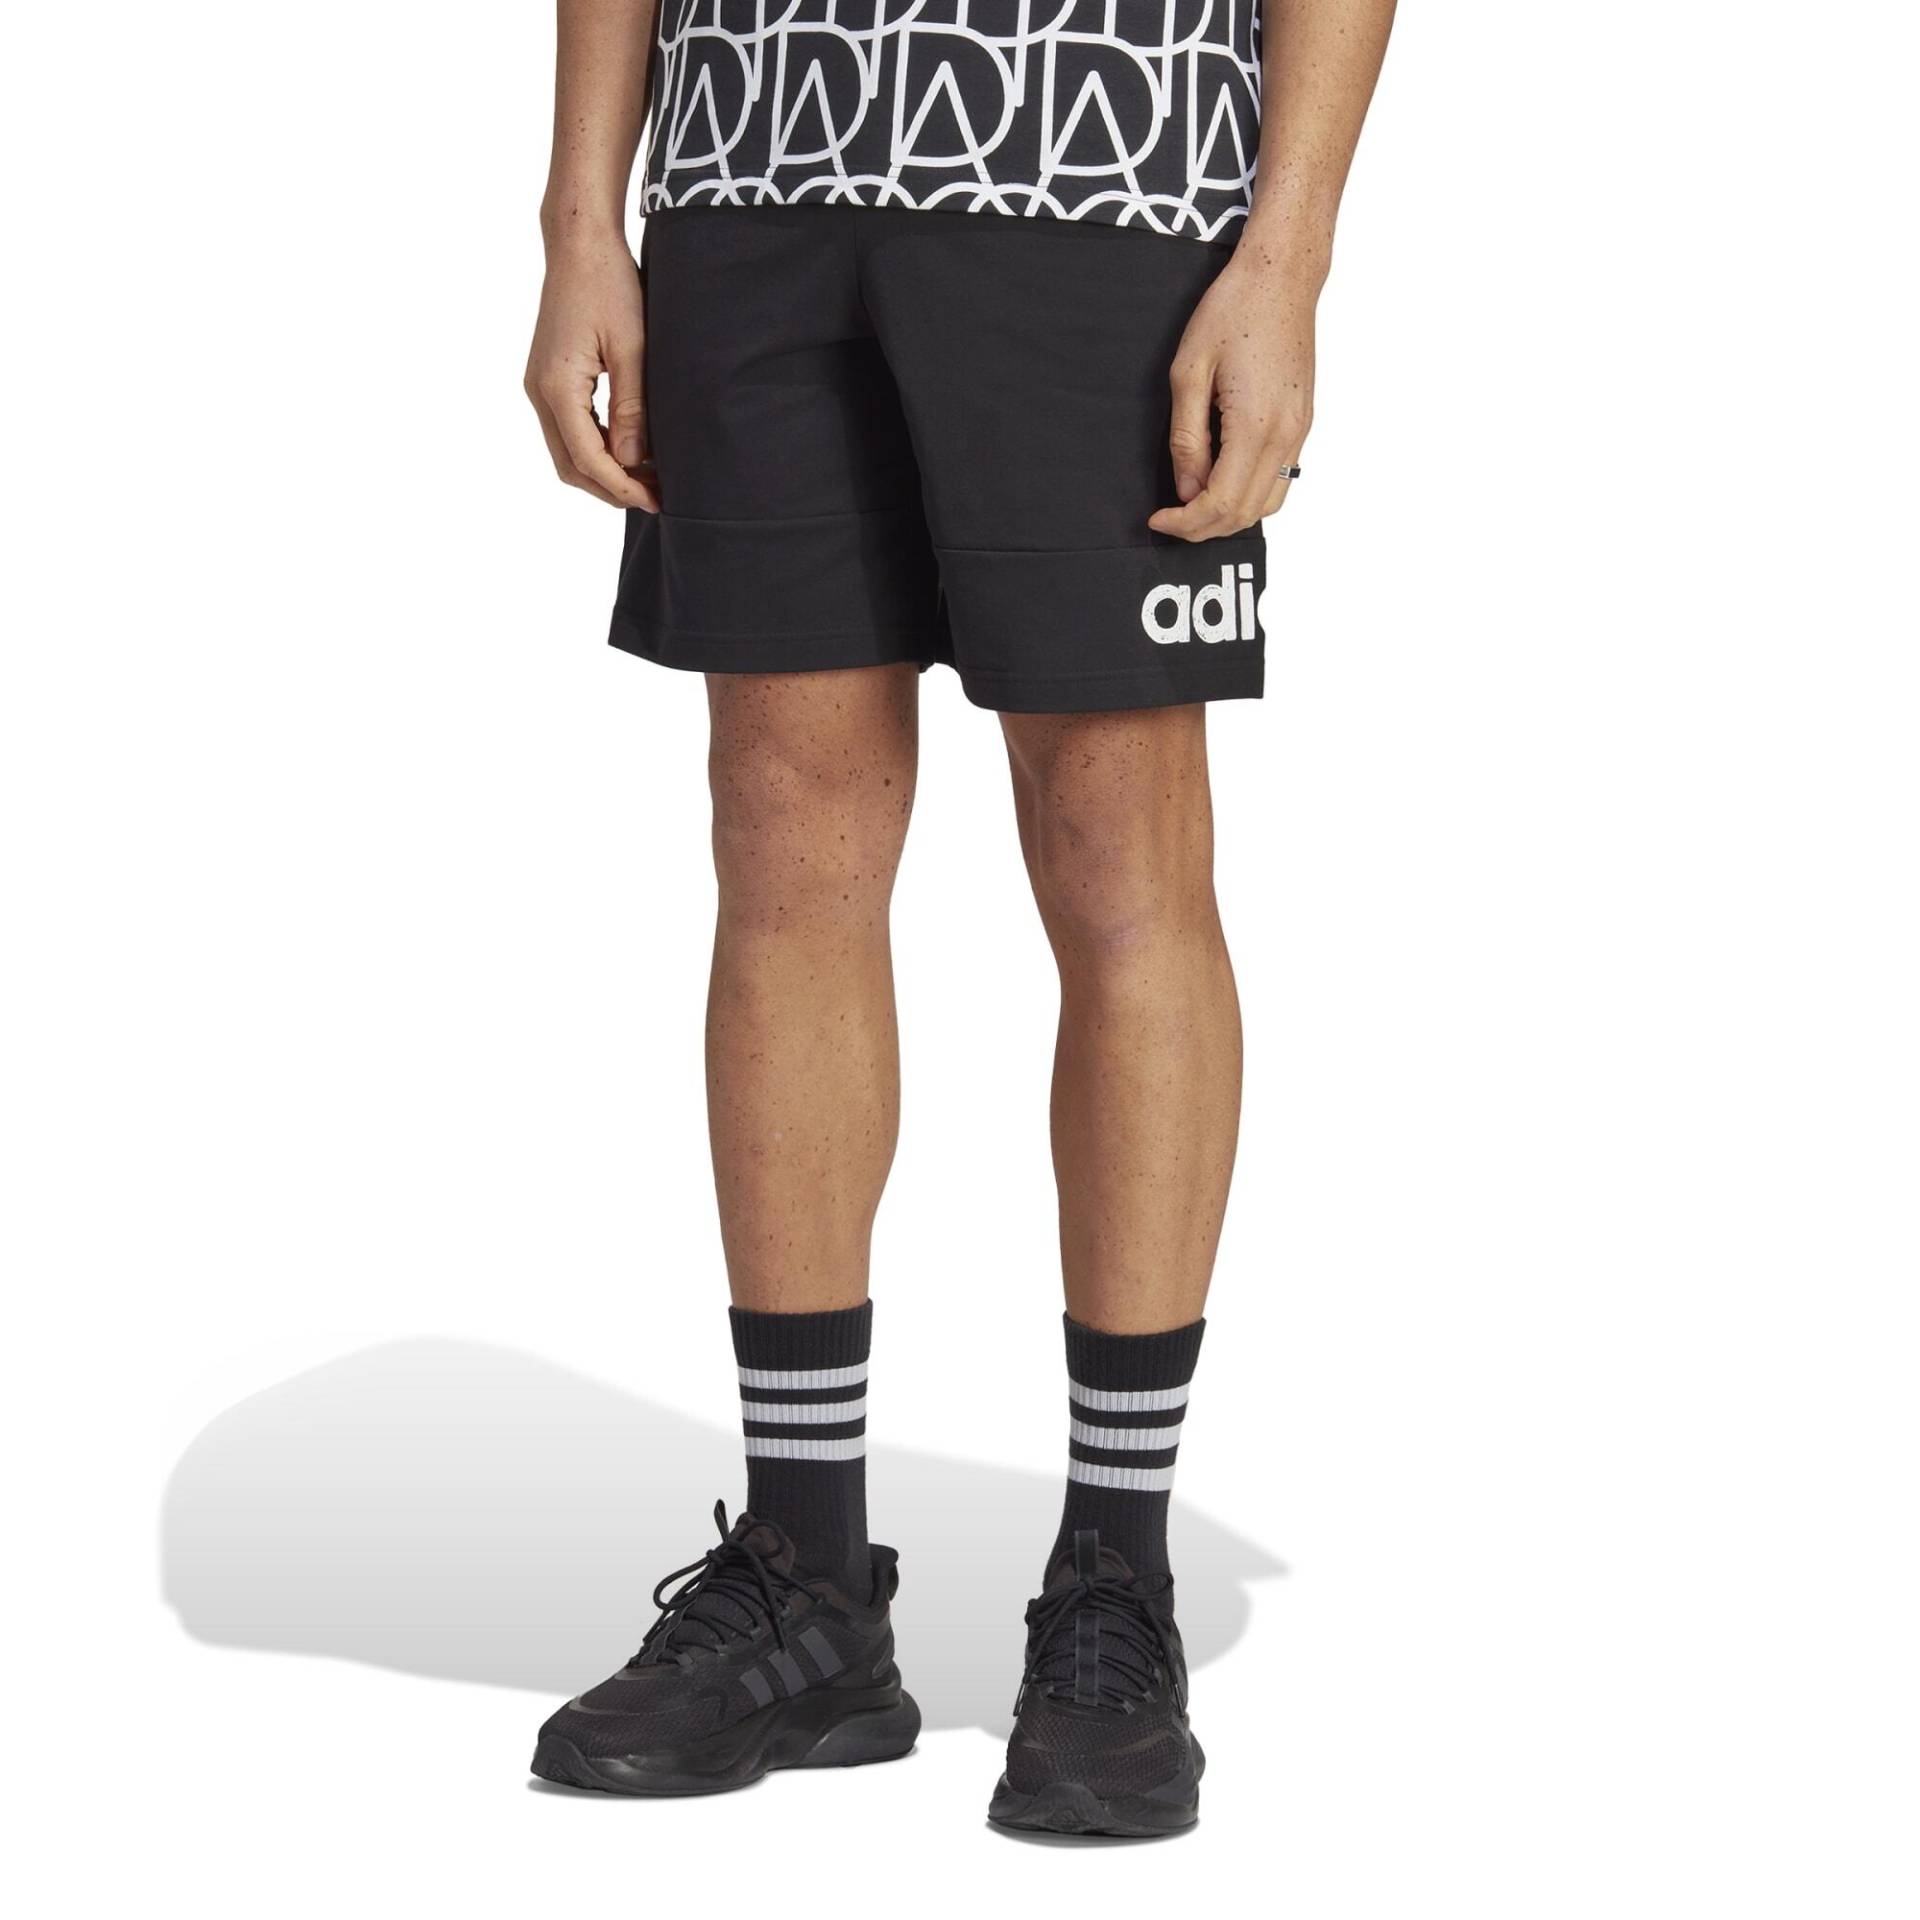 Adidas Shorts Herren - schwarz/weiss von Adidas